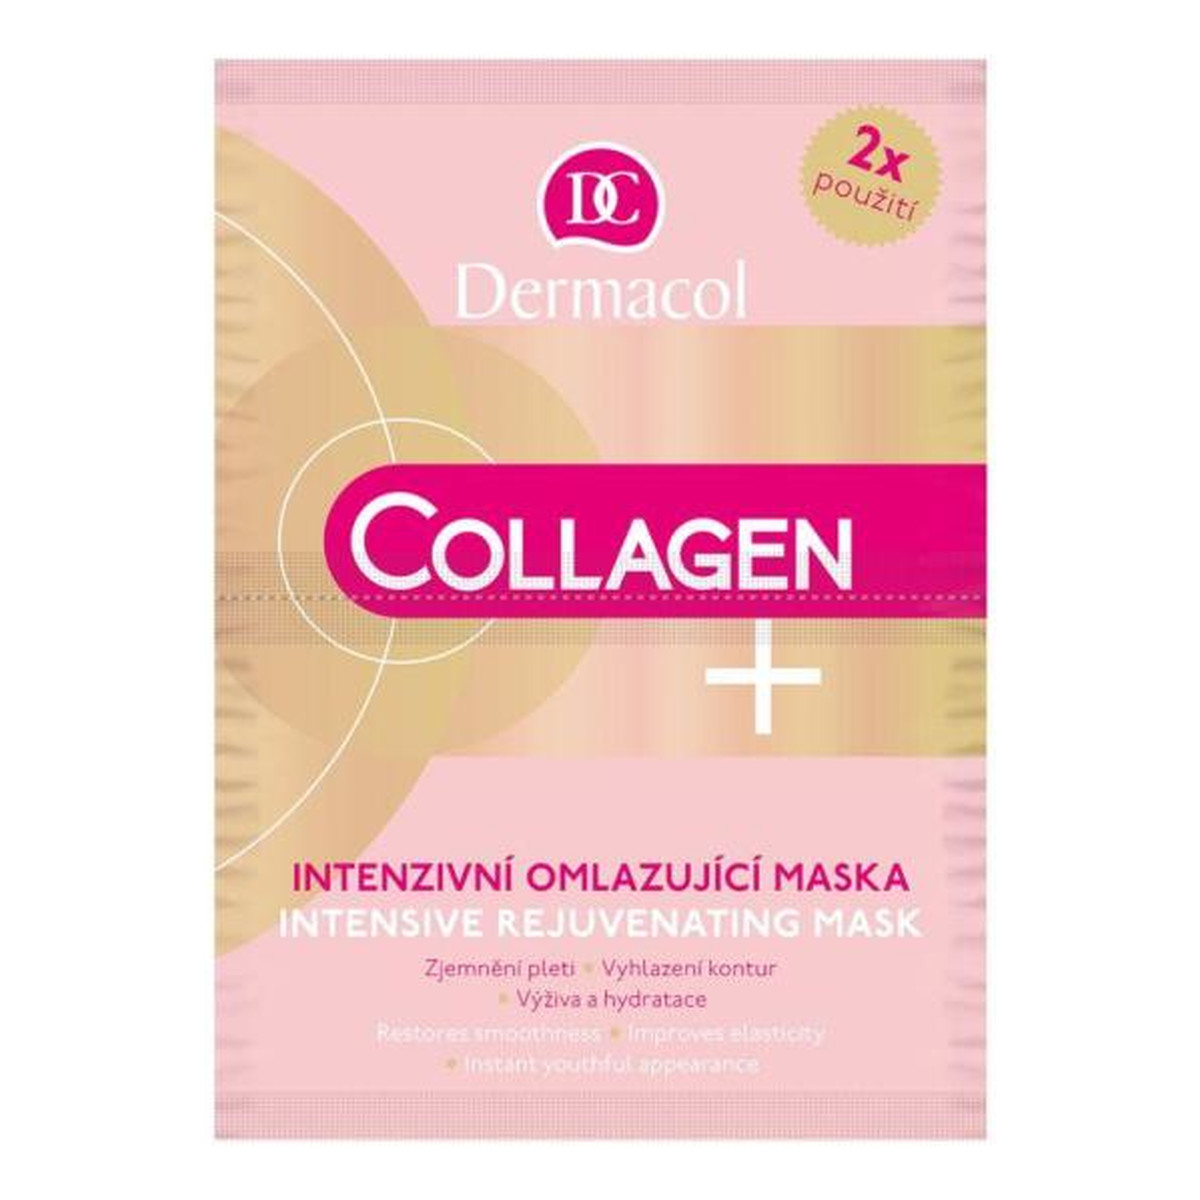 Dermacol Collagen Plus Intensive Rejuvenating Mask maseczka odmładzająca do twarzy